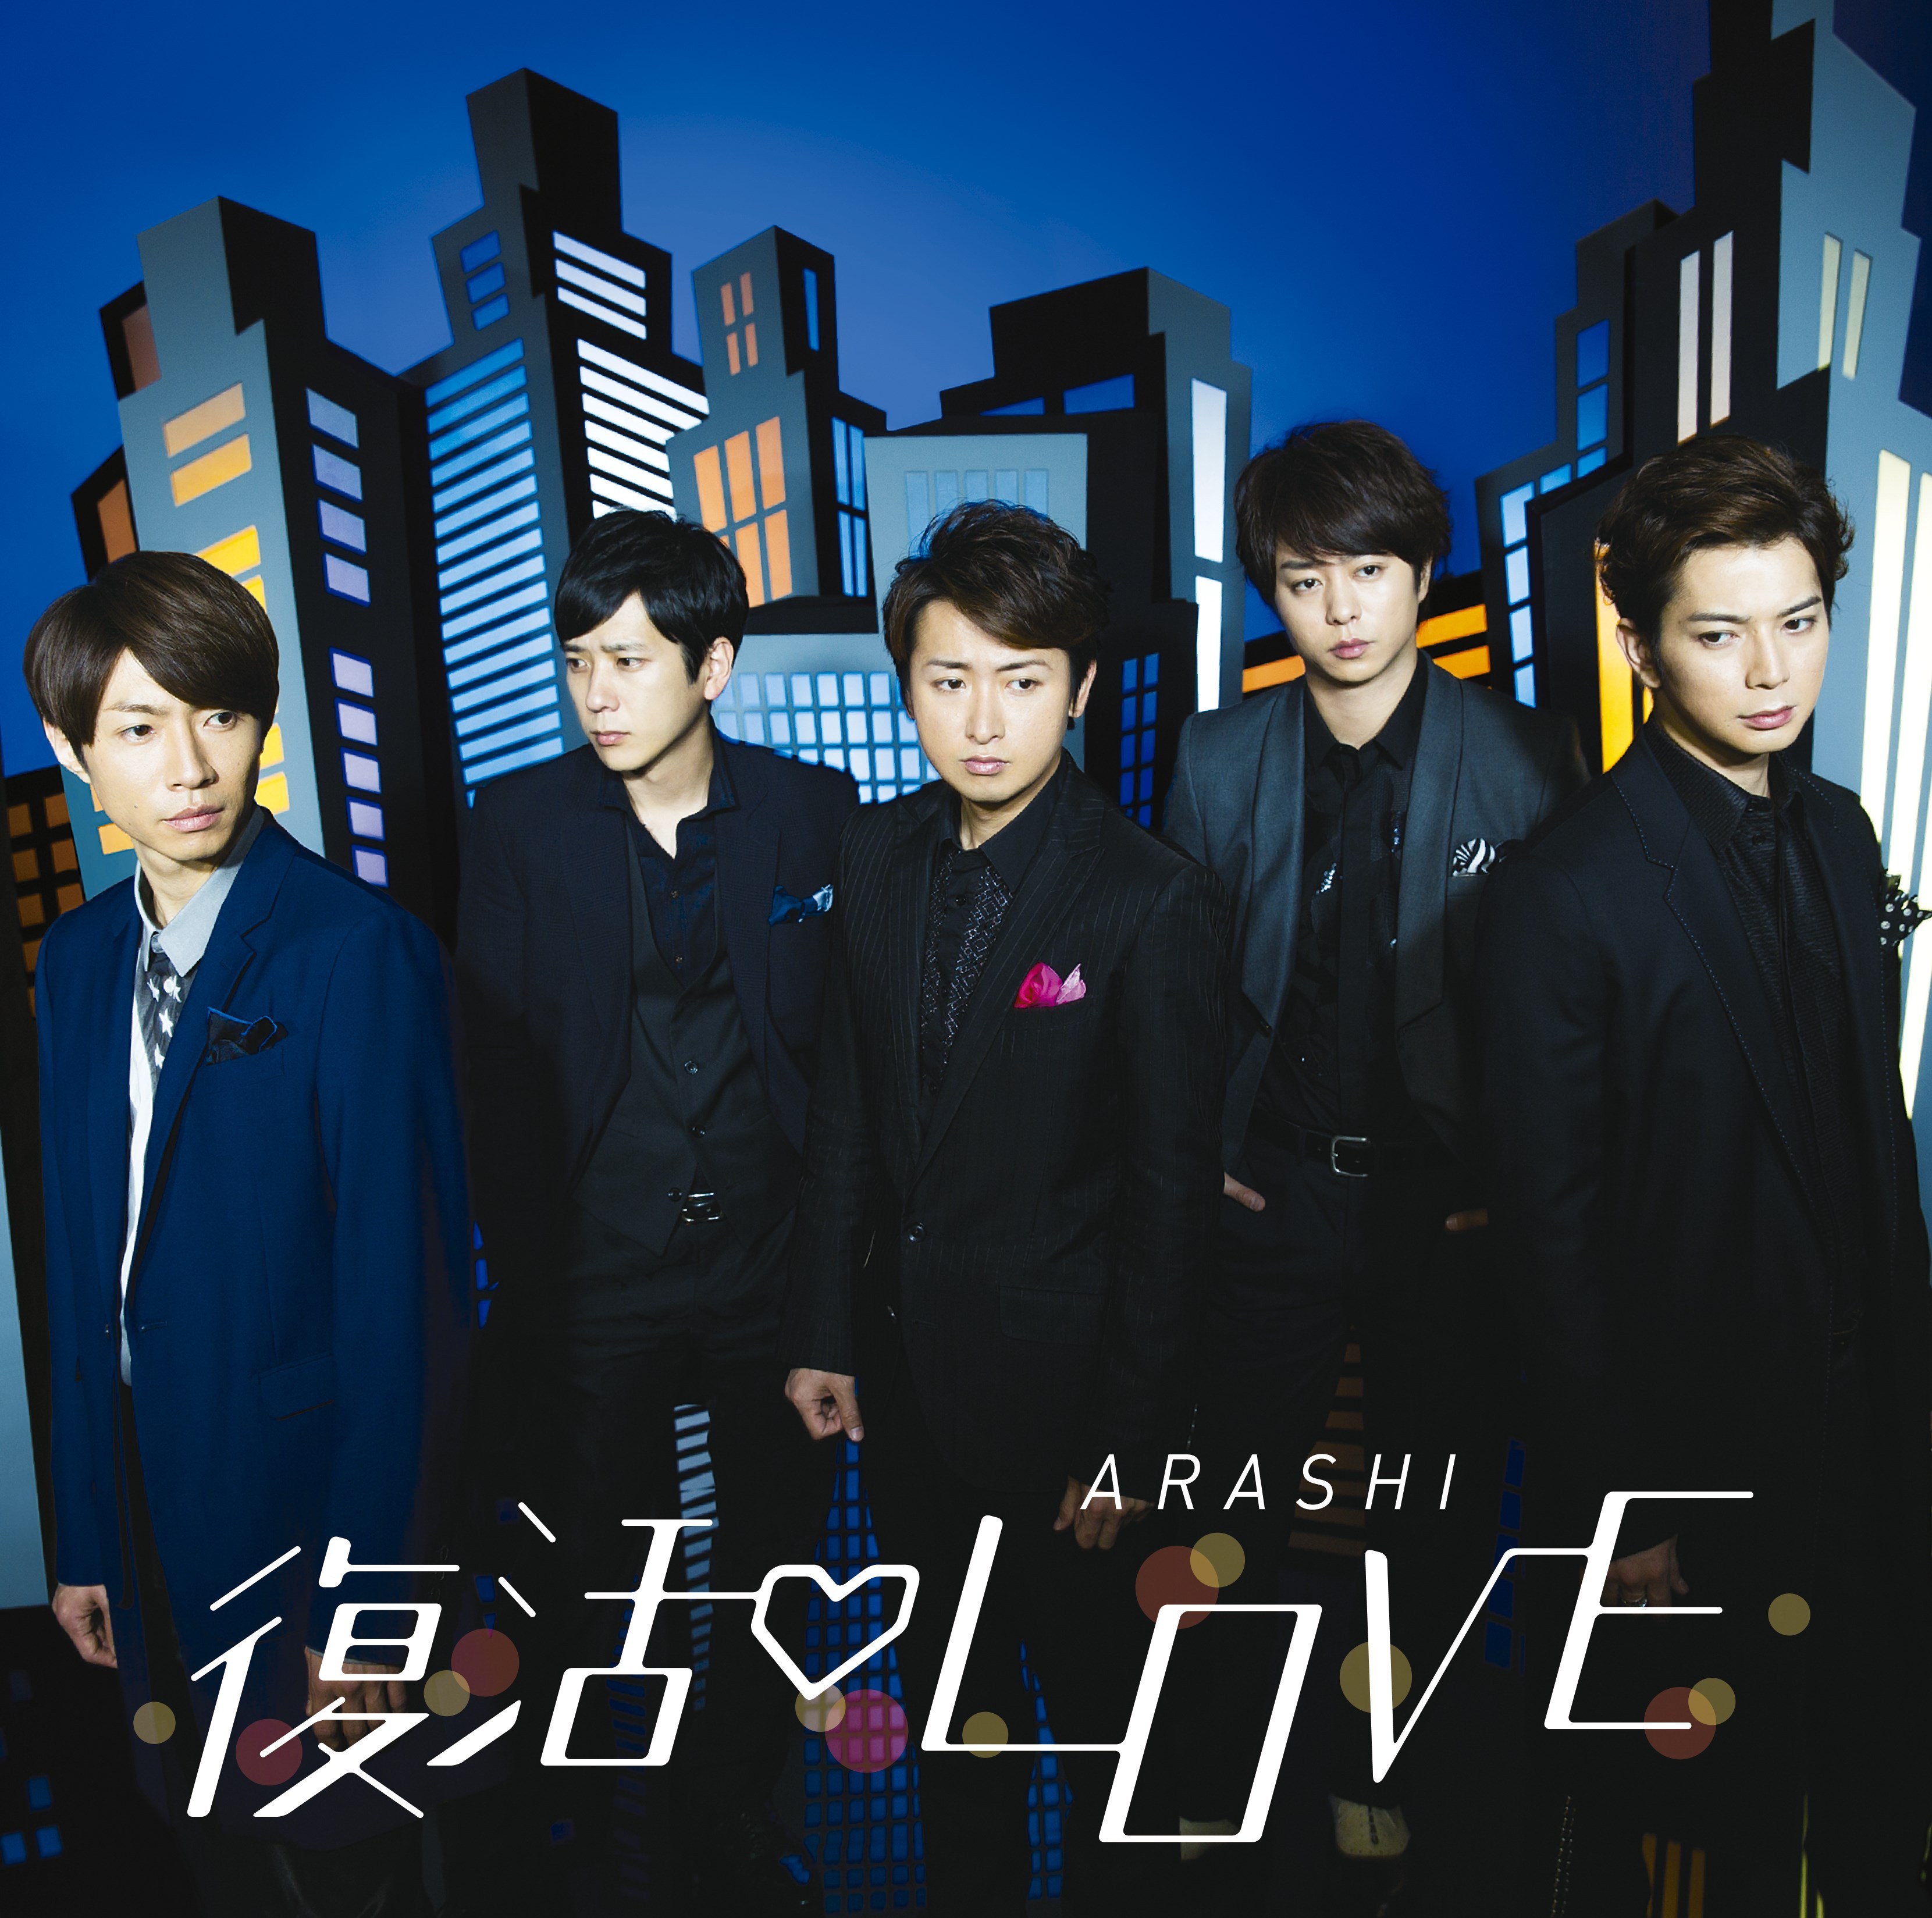 嵐 (あらし) 48thシングル『復活LOVE』(2016年2月24日発売) 高画質CD